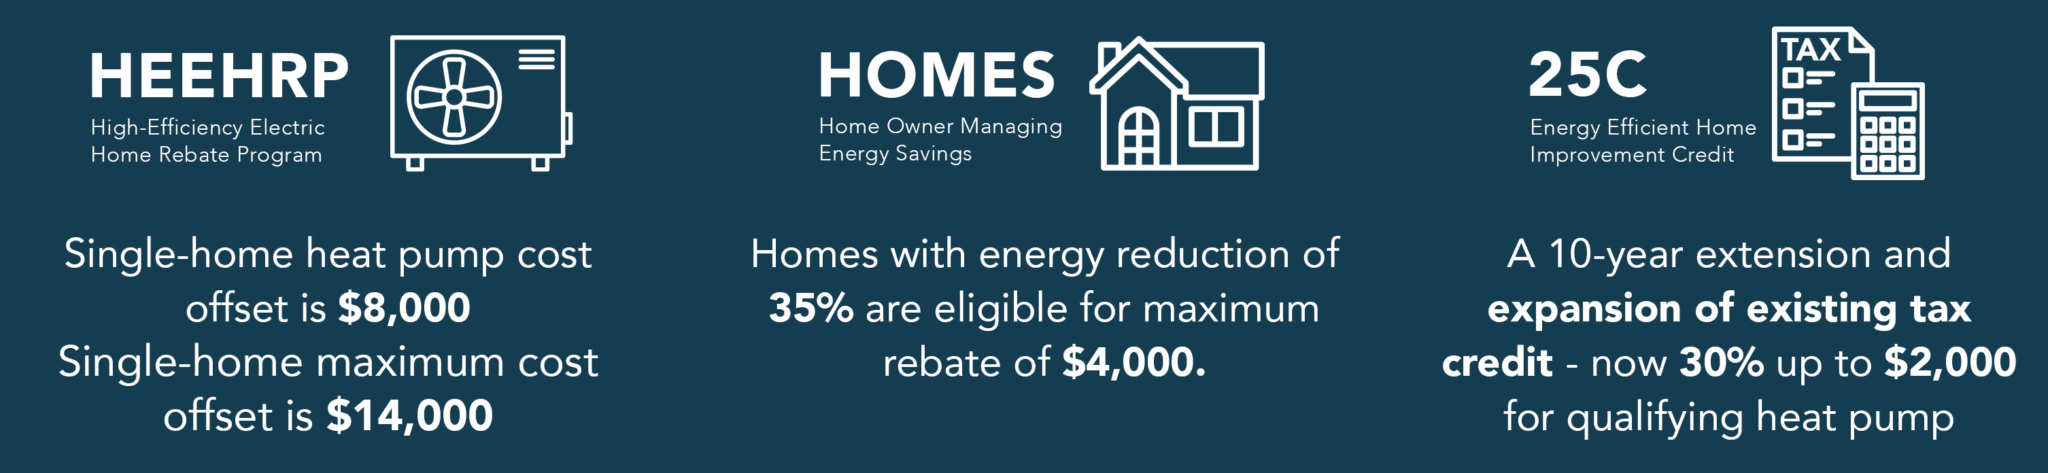 High Efficiency Electric Home Rebate Program Heat Pump